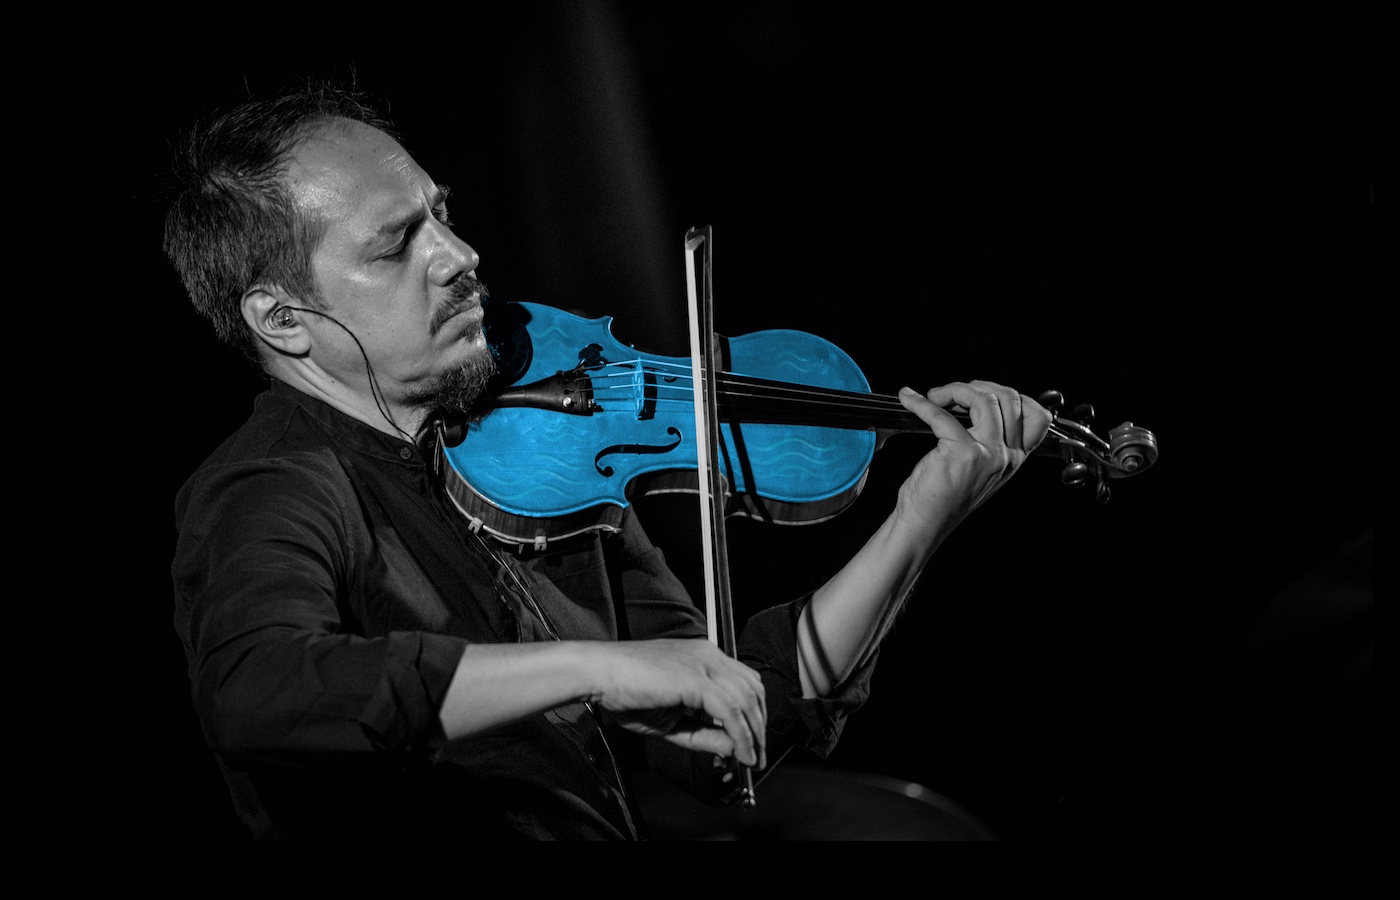 L’Istituto Italiano di Cultura di New York presenta il concerto del violinista Luca Ciarla dalle Isole Tremiti